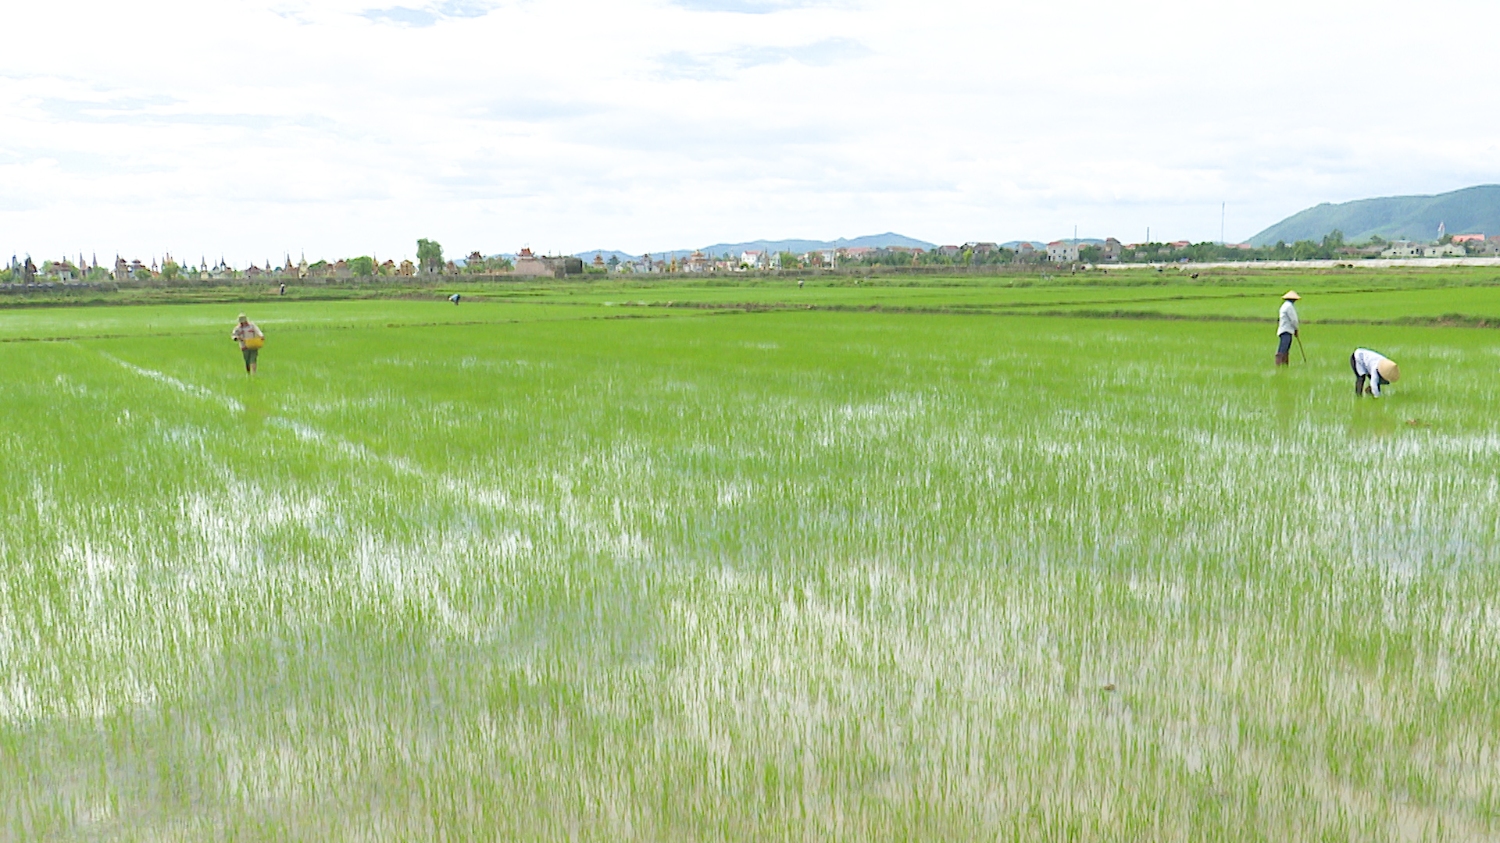 Nhờ sử dụng nước tưới hợp lý nên đến nay cây lúa đang sinh trưởng, phát triển tốt.